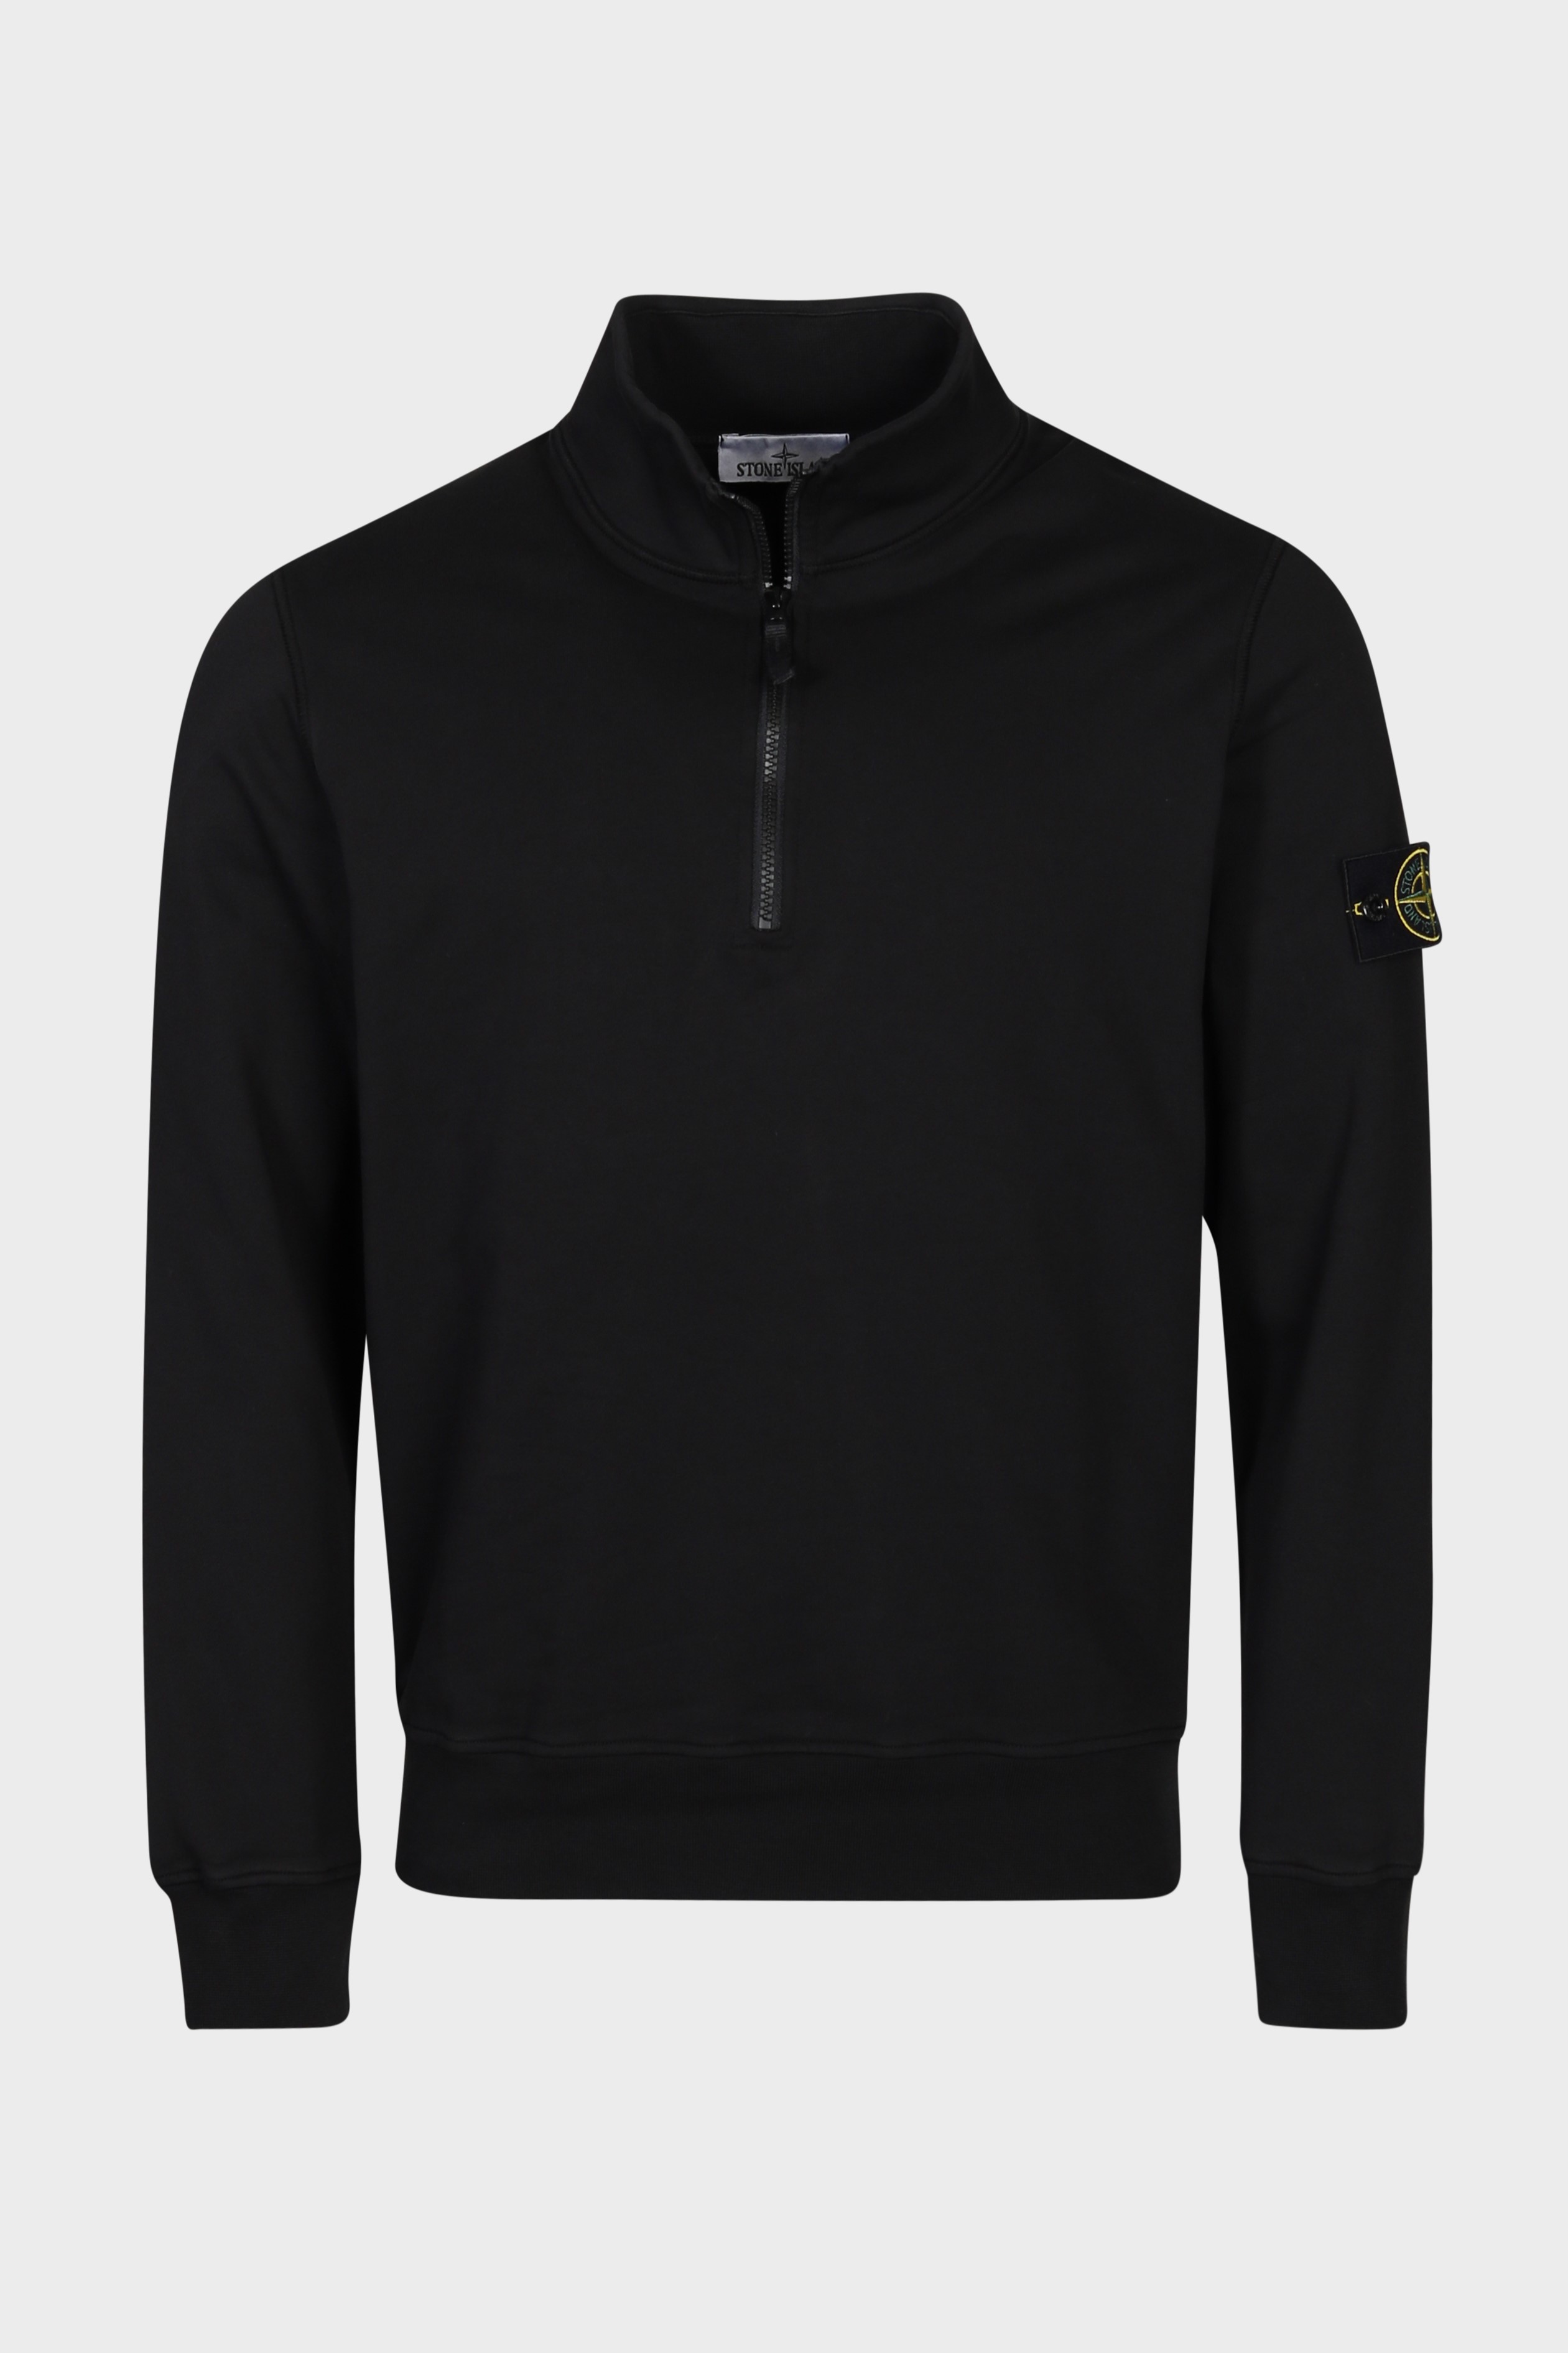 STONE ISLAND Half Zip Sweatshirt in Black